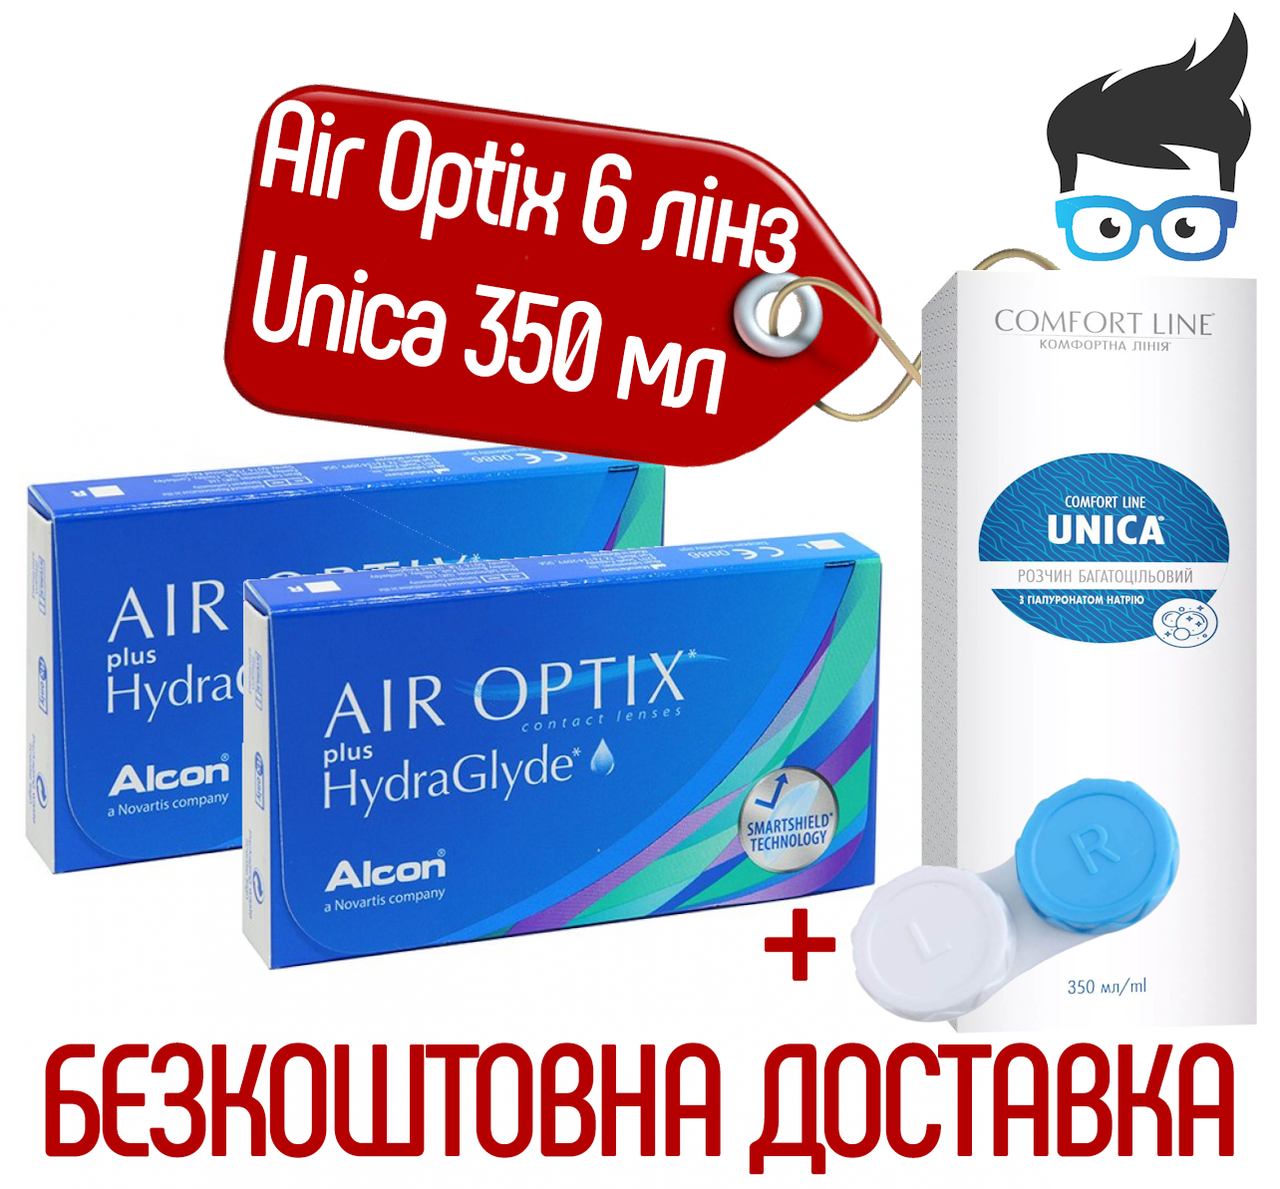 Контактні лінзи Air Optix Plus Hydraglyde 6 лінз + Розчин Avizor Unica Comfort Line 350 мл + контейнер